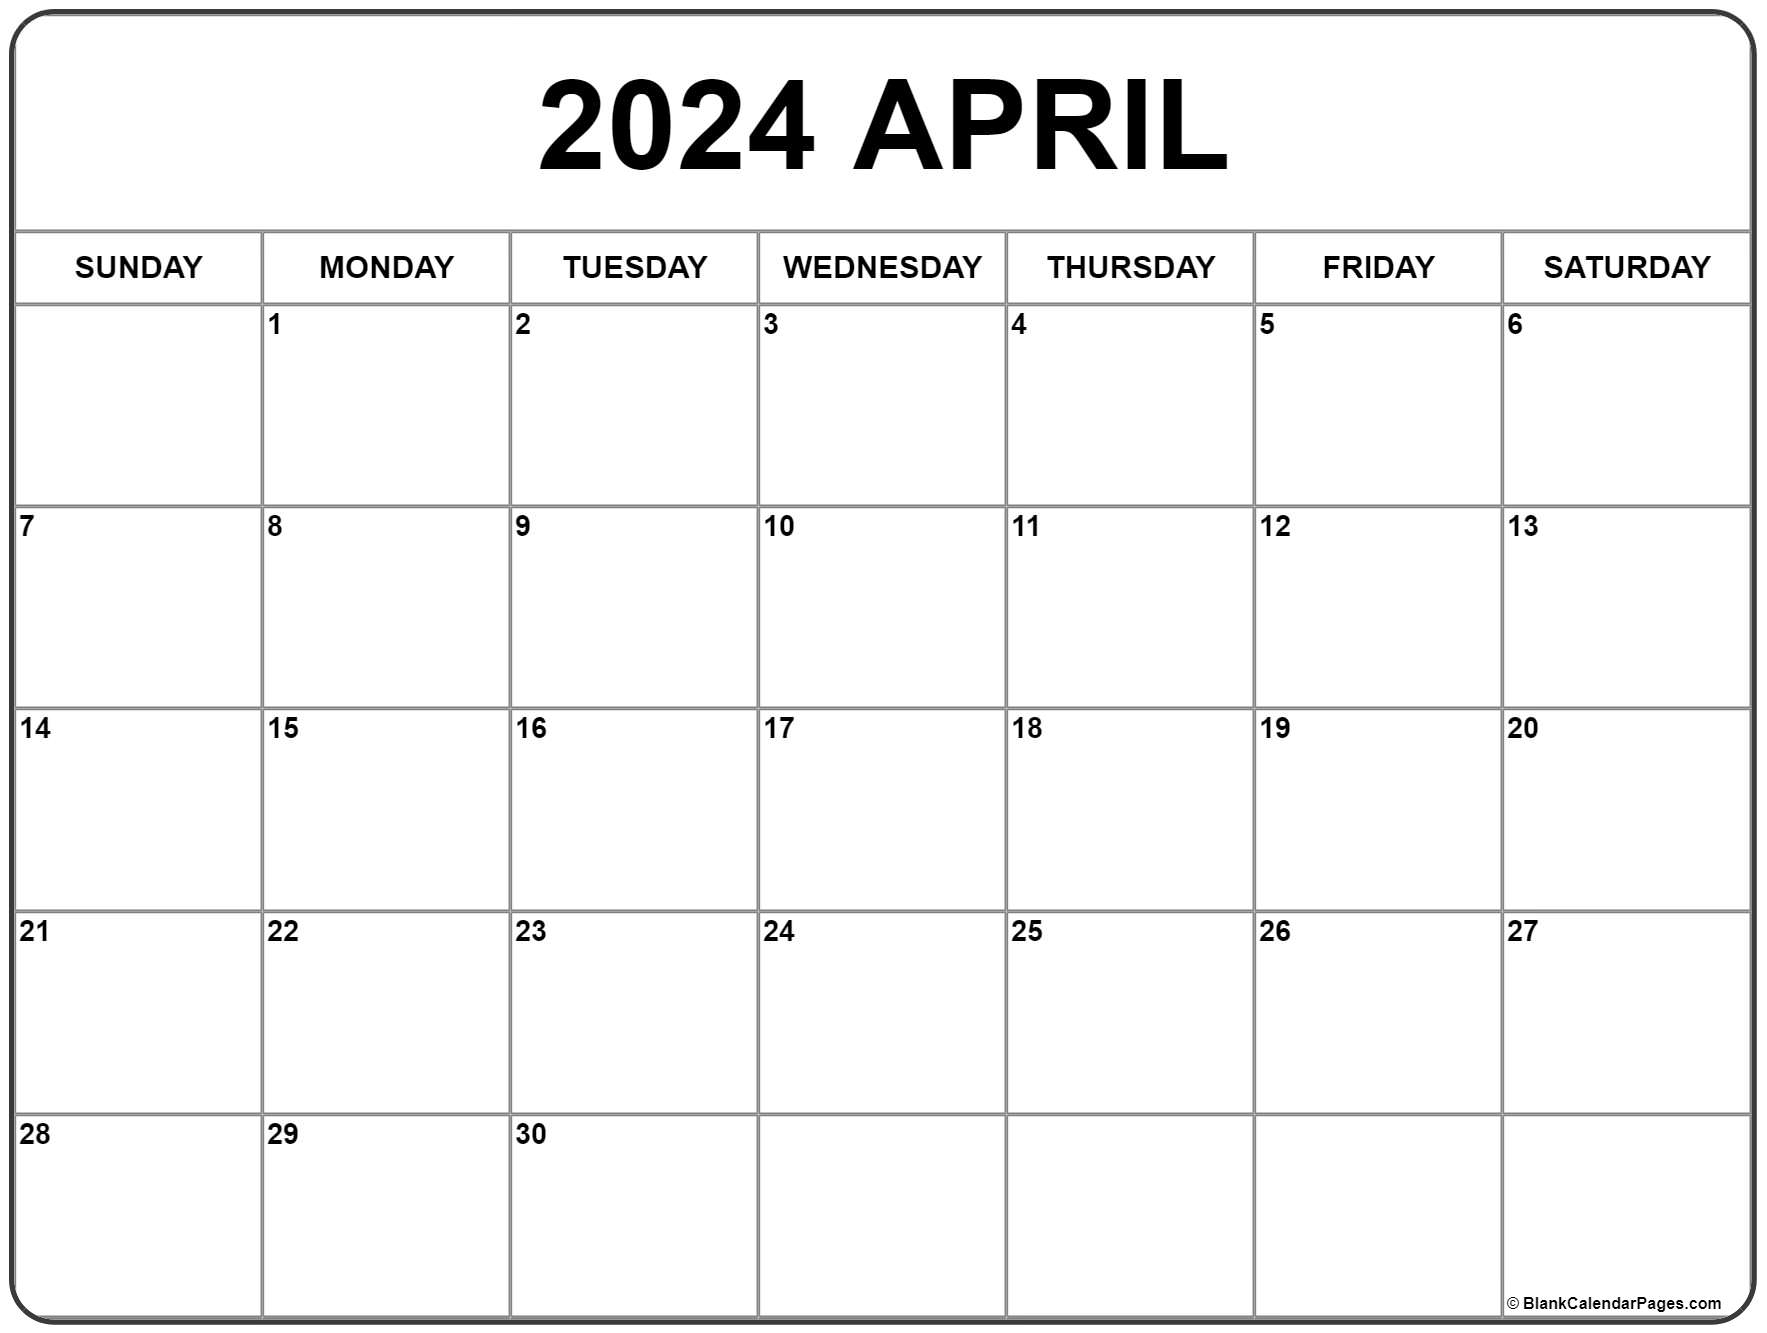 April 2024 Calendar | Free Printable Calendar for Calendar 2024 April